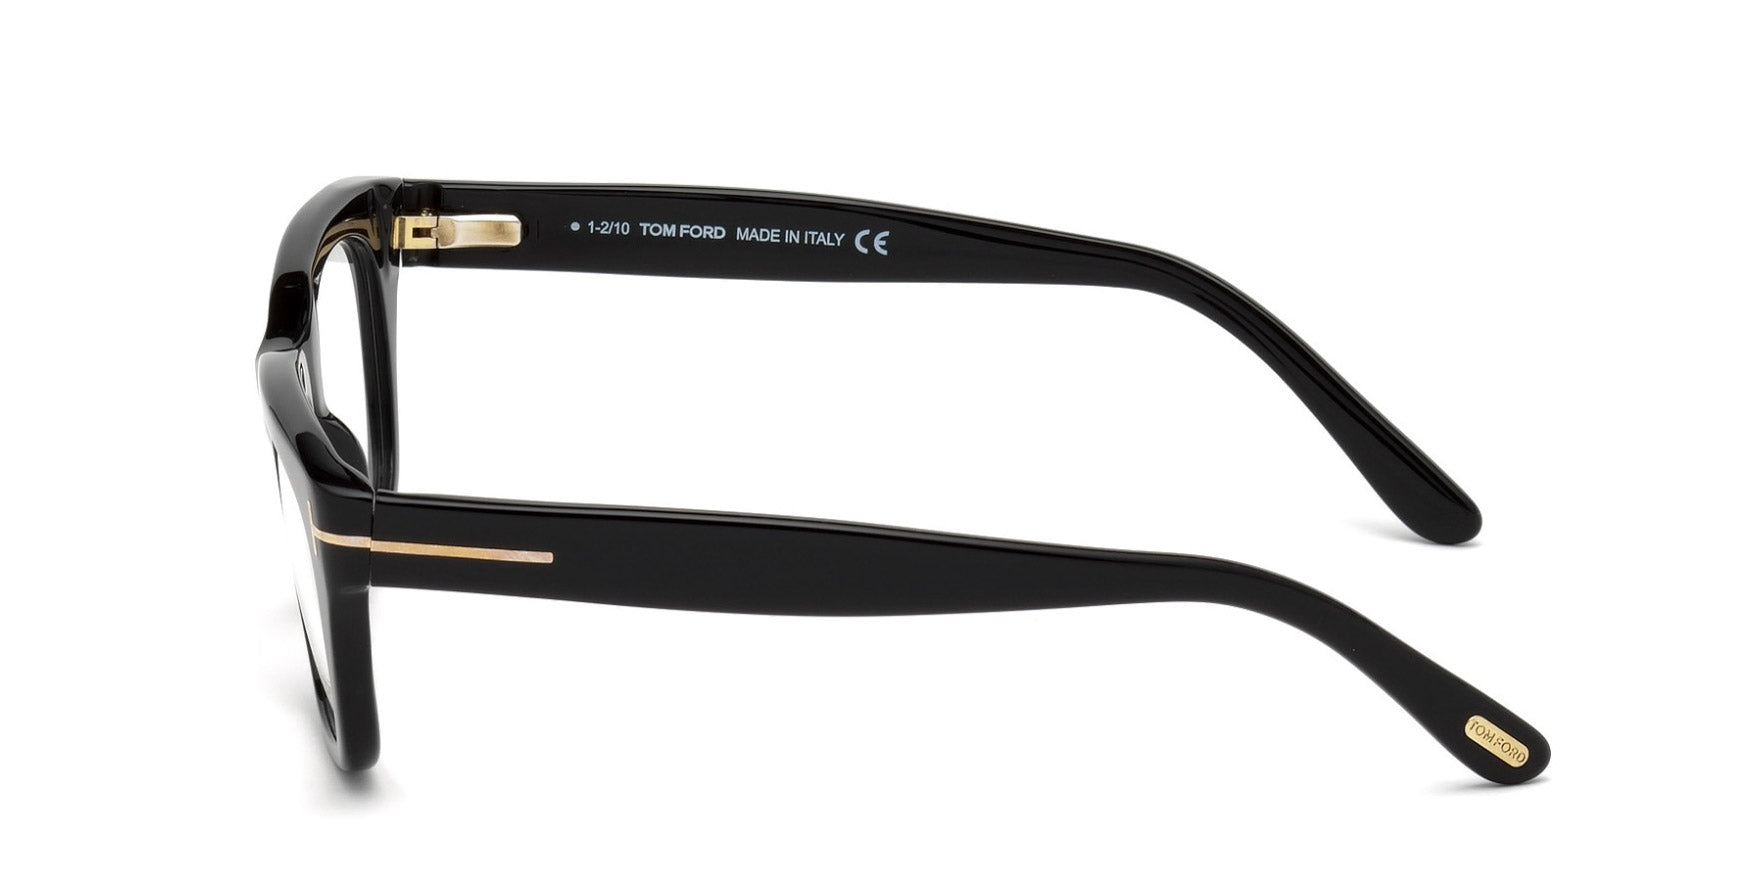 Tom Ford TF5178 Square Glasses | Fashion Eyewear